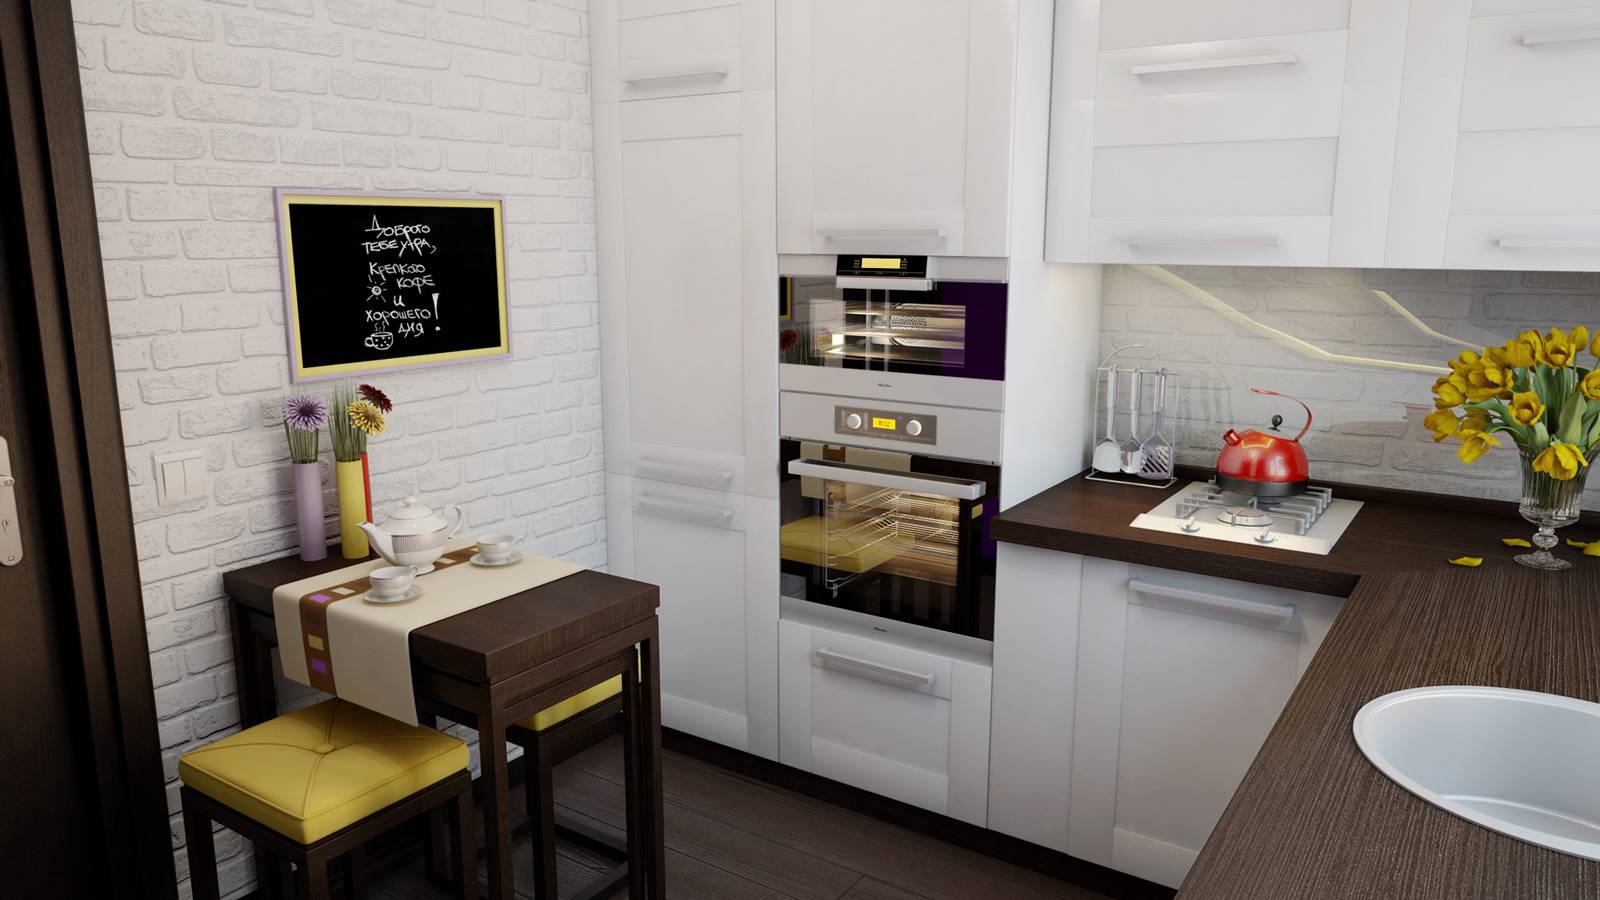 Кухня 10 кв. м.: современный умный и компактный дизайн стильного интерьера (75 фото)